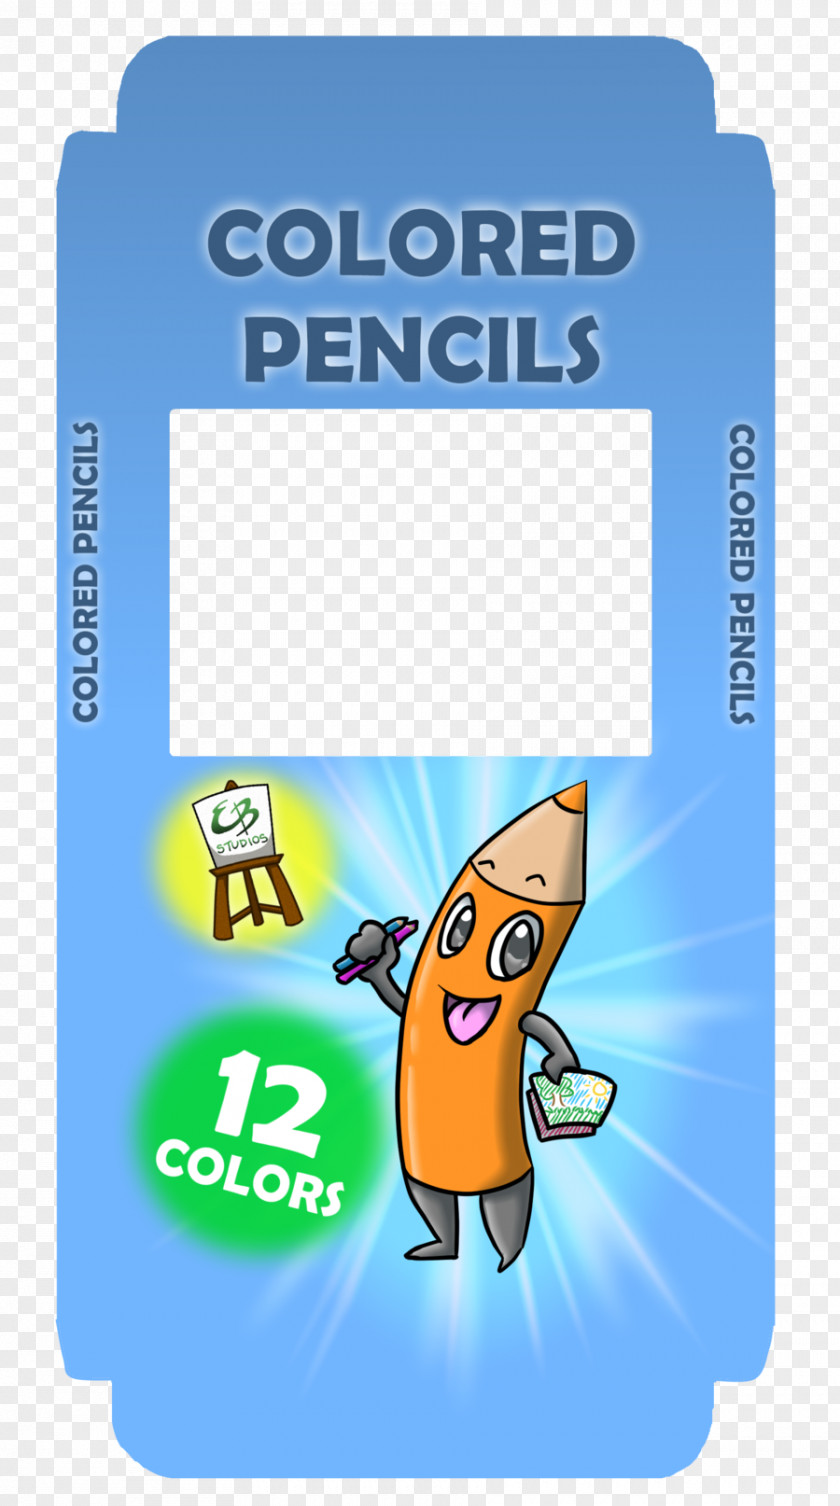 Box Designs Colored Pencil Pen & Cases Crayola PNG